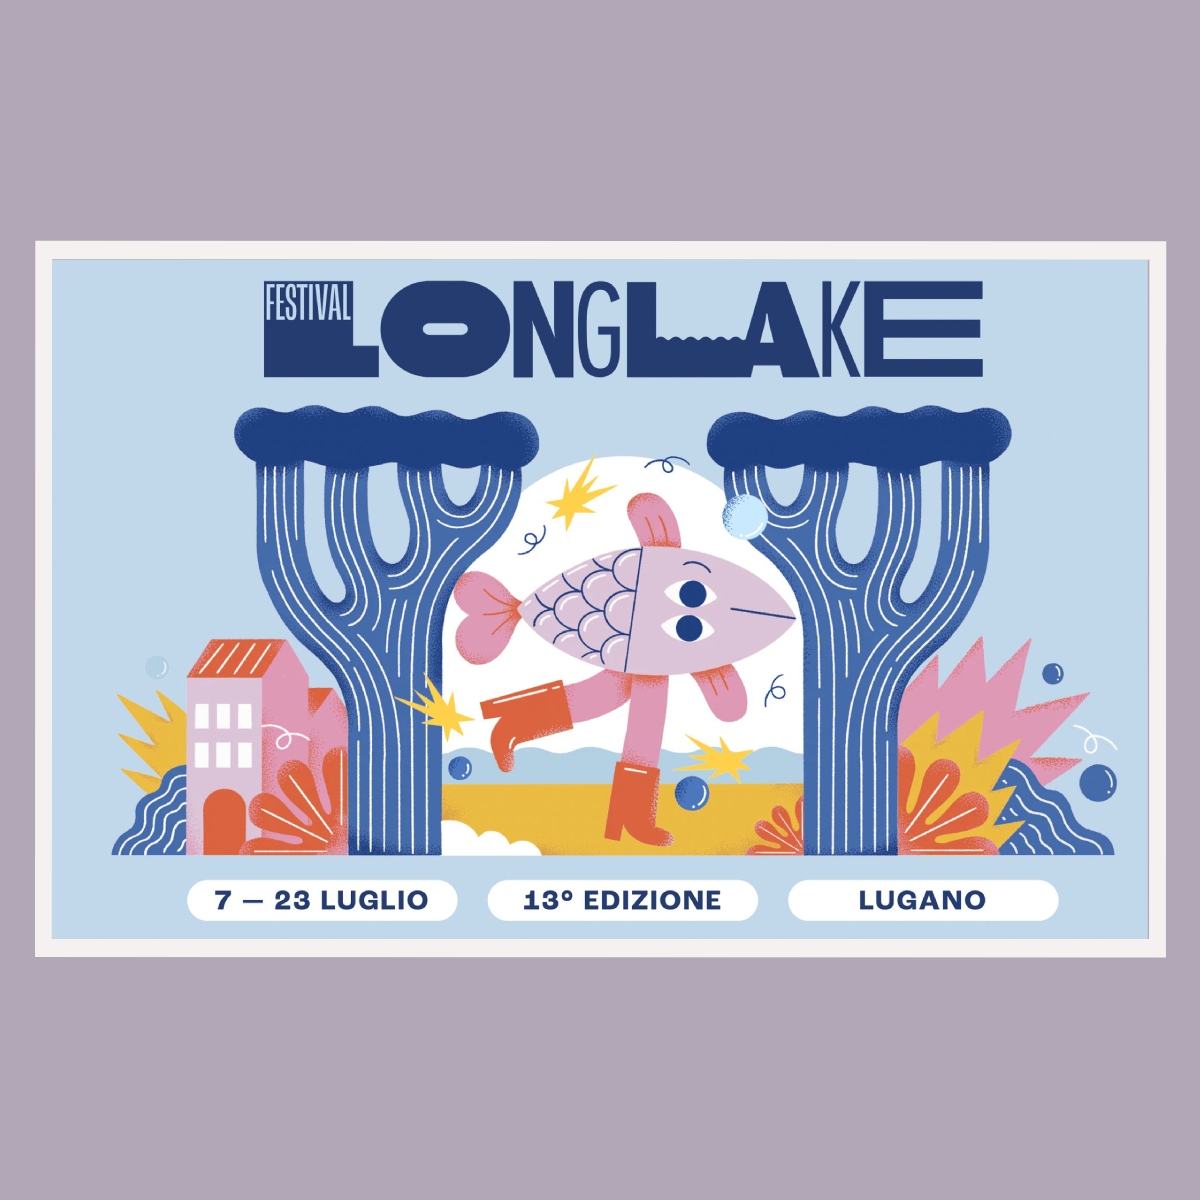 Longlake Lugano